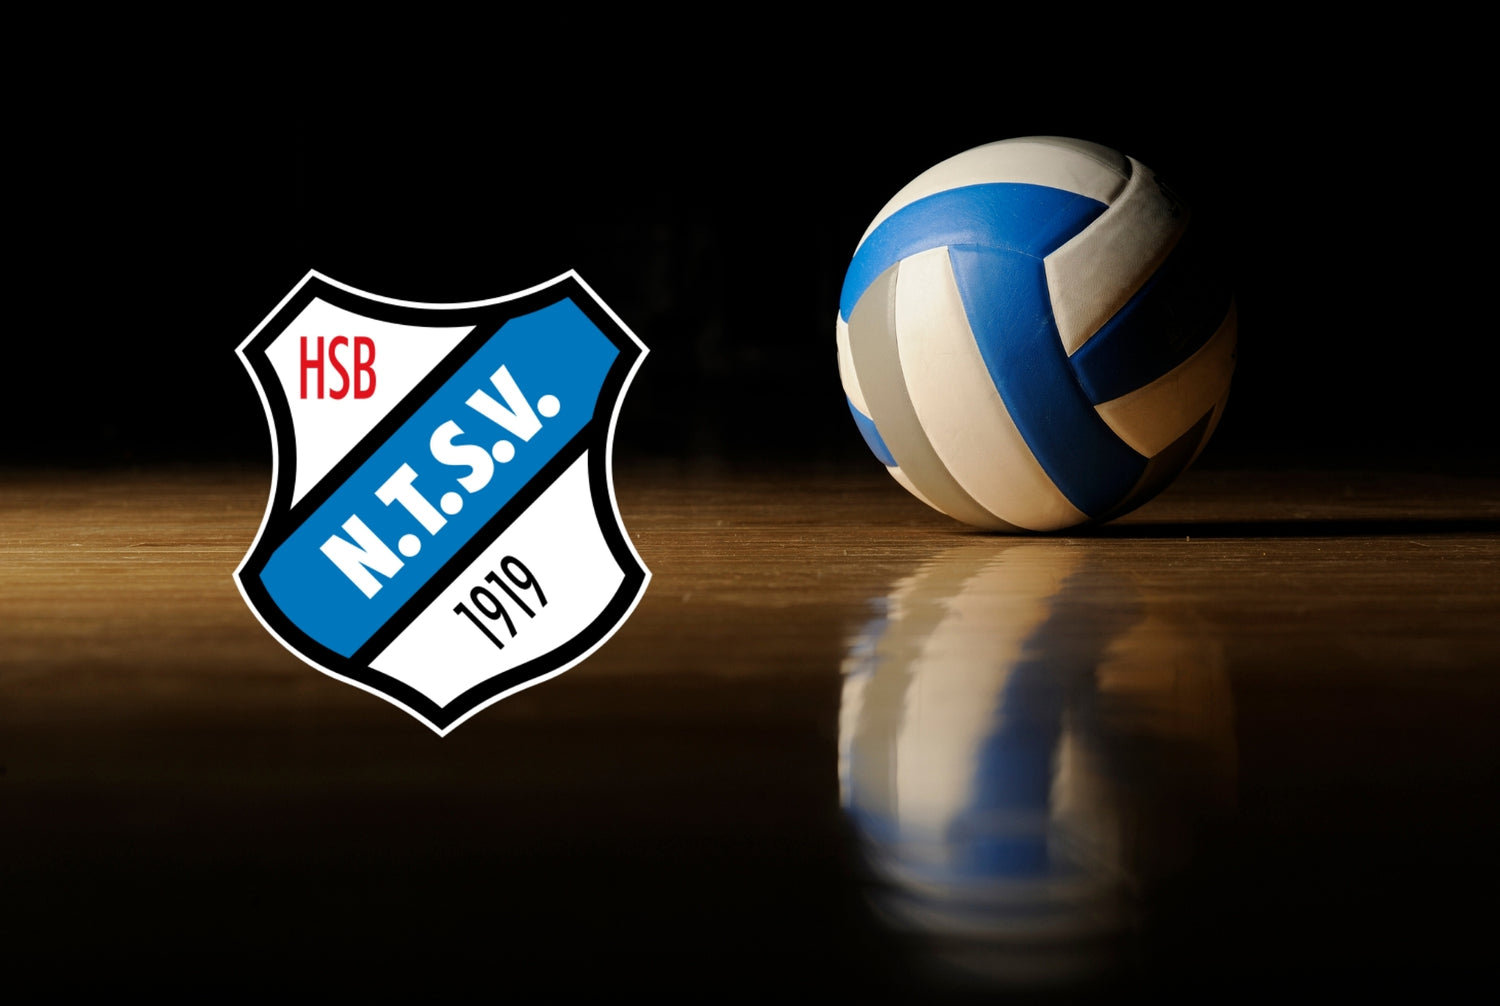 DENKRIESEN unterstützt junge Volleyballtalente des Niendorfer Turn- und Sportvereins e.V. mit Trikotsponsoring